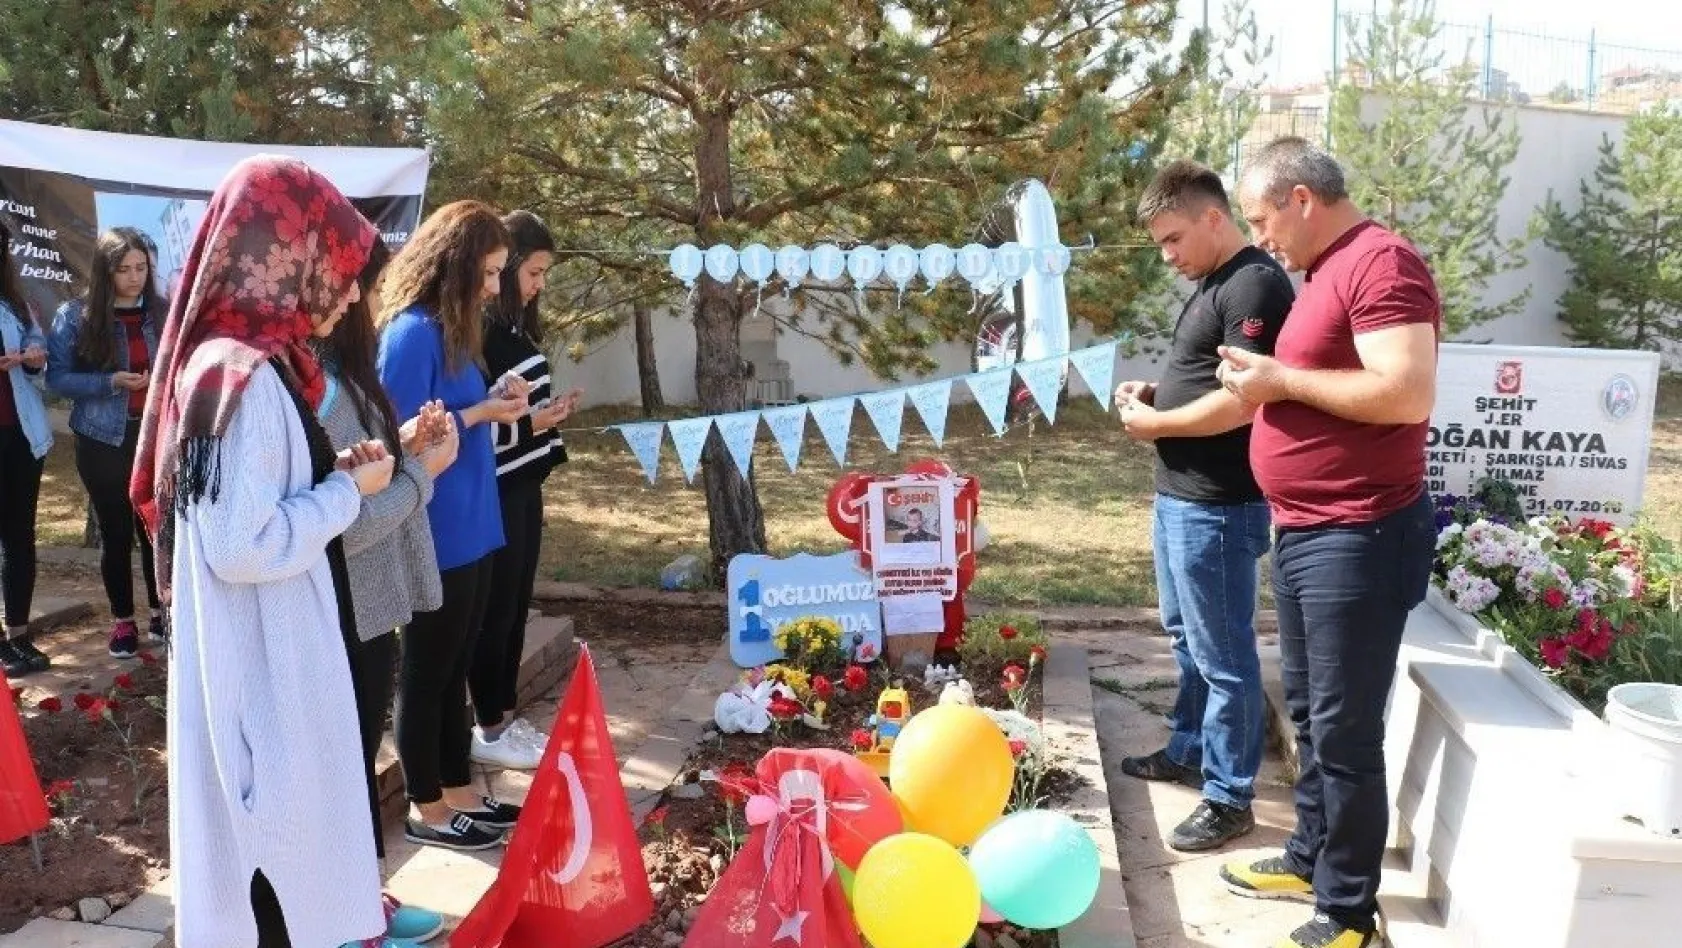 Şehit bebeğin ilk doğum günü mezarında kutlandı